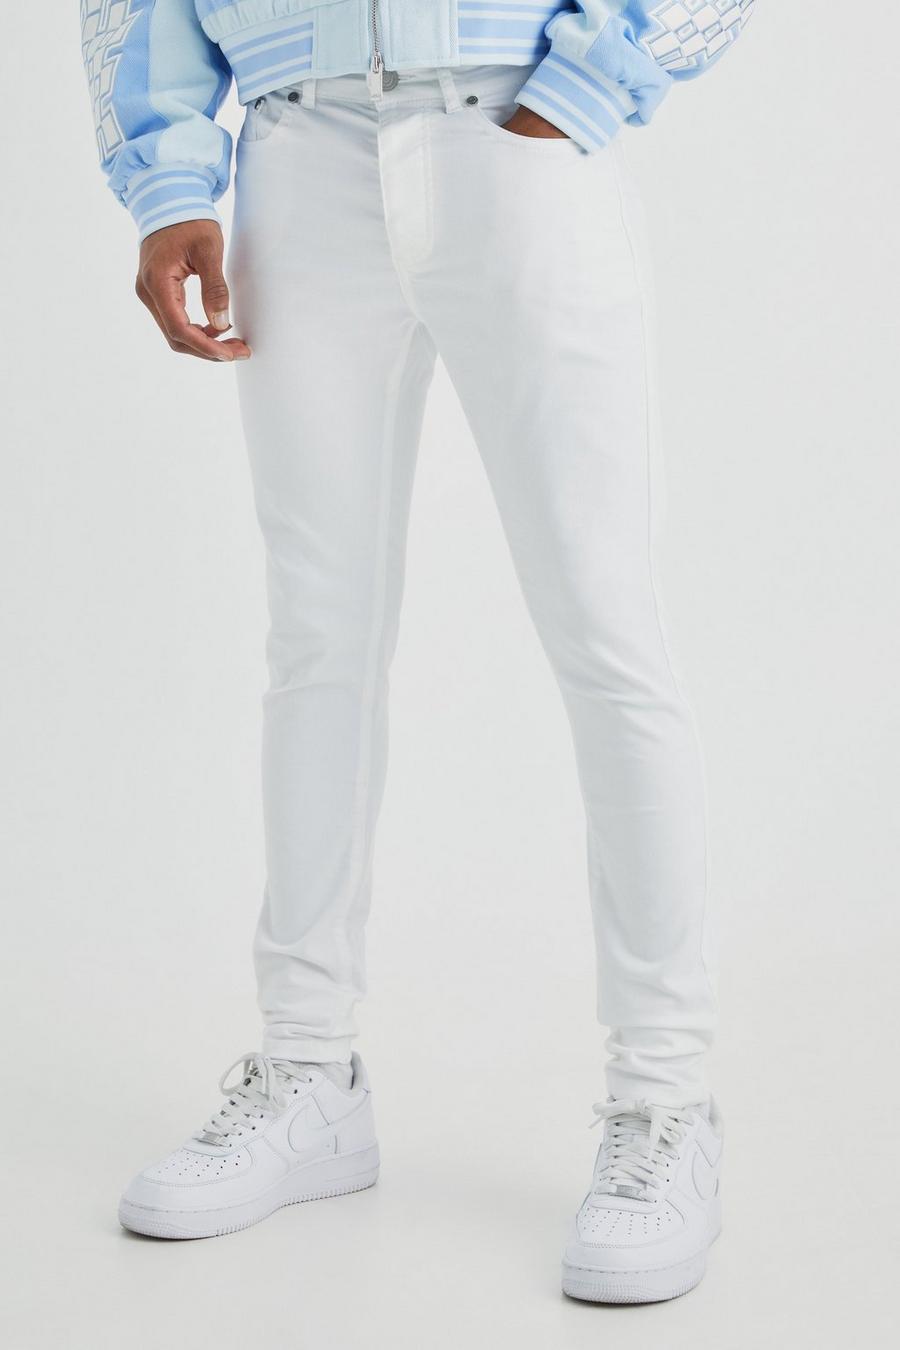 Jeans Super Skinny Fit in Stretch, White